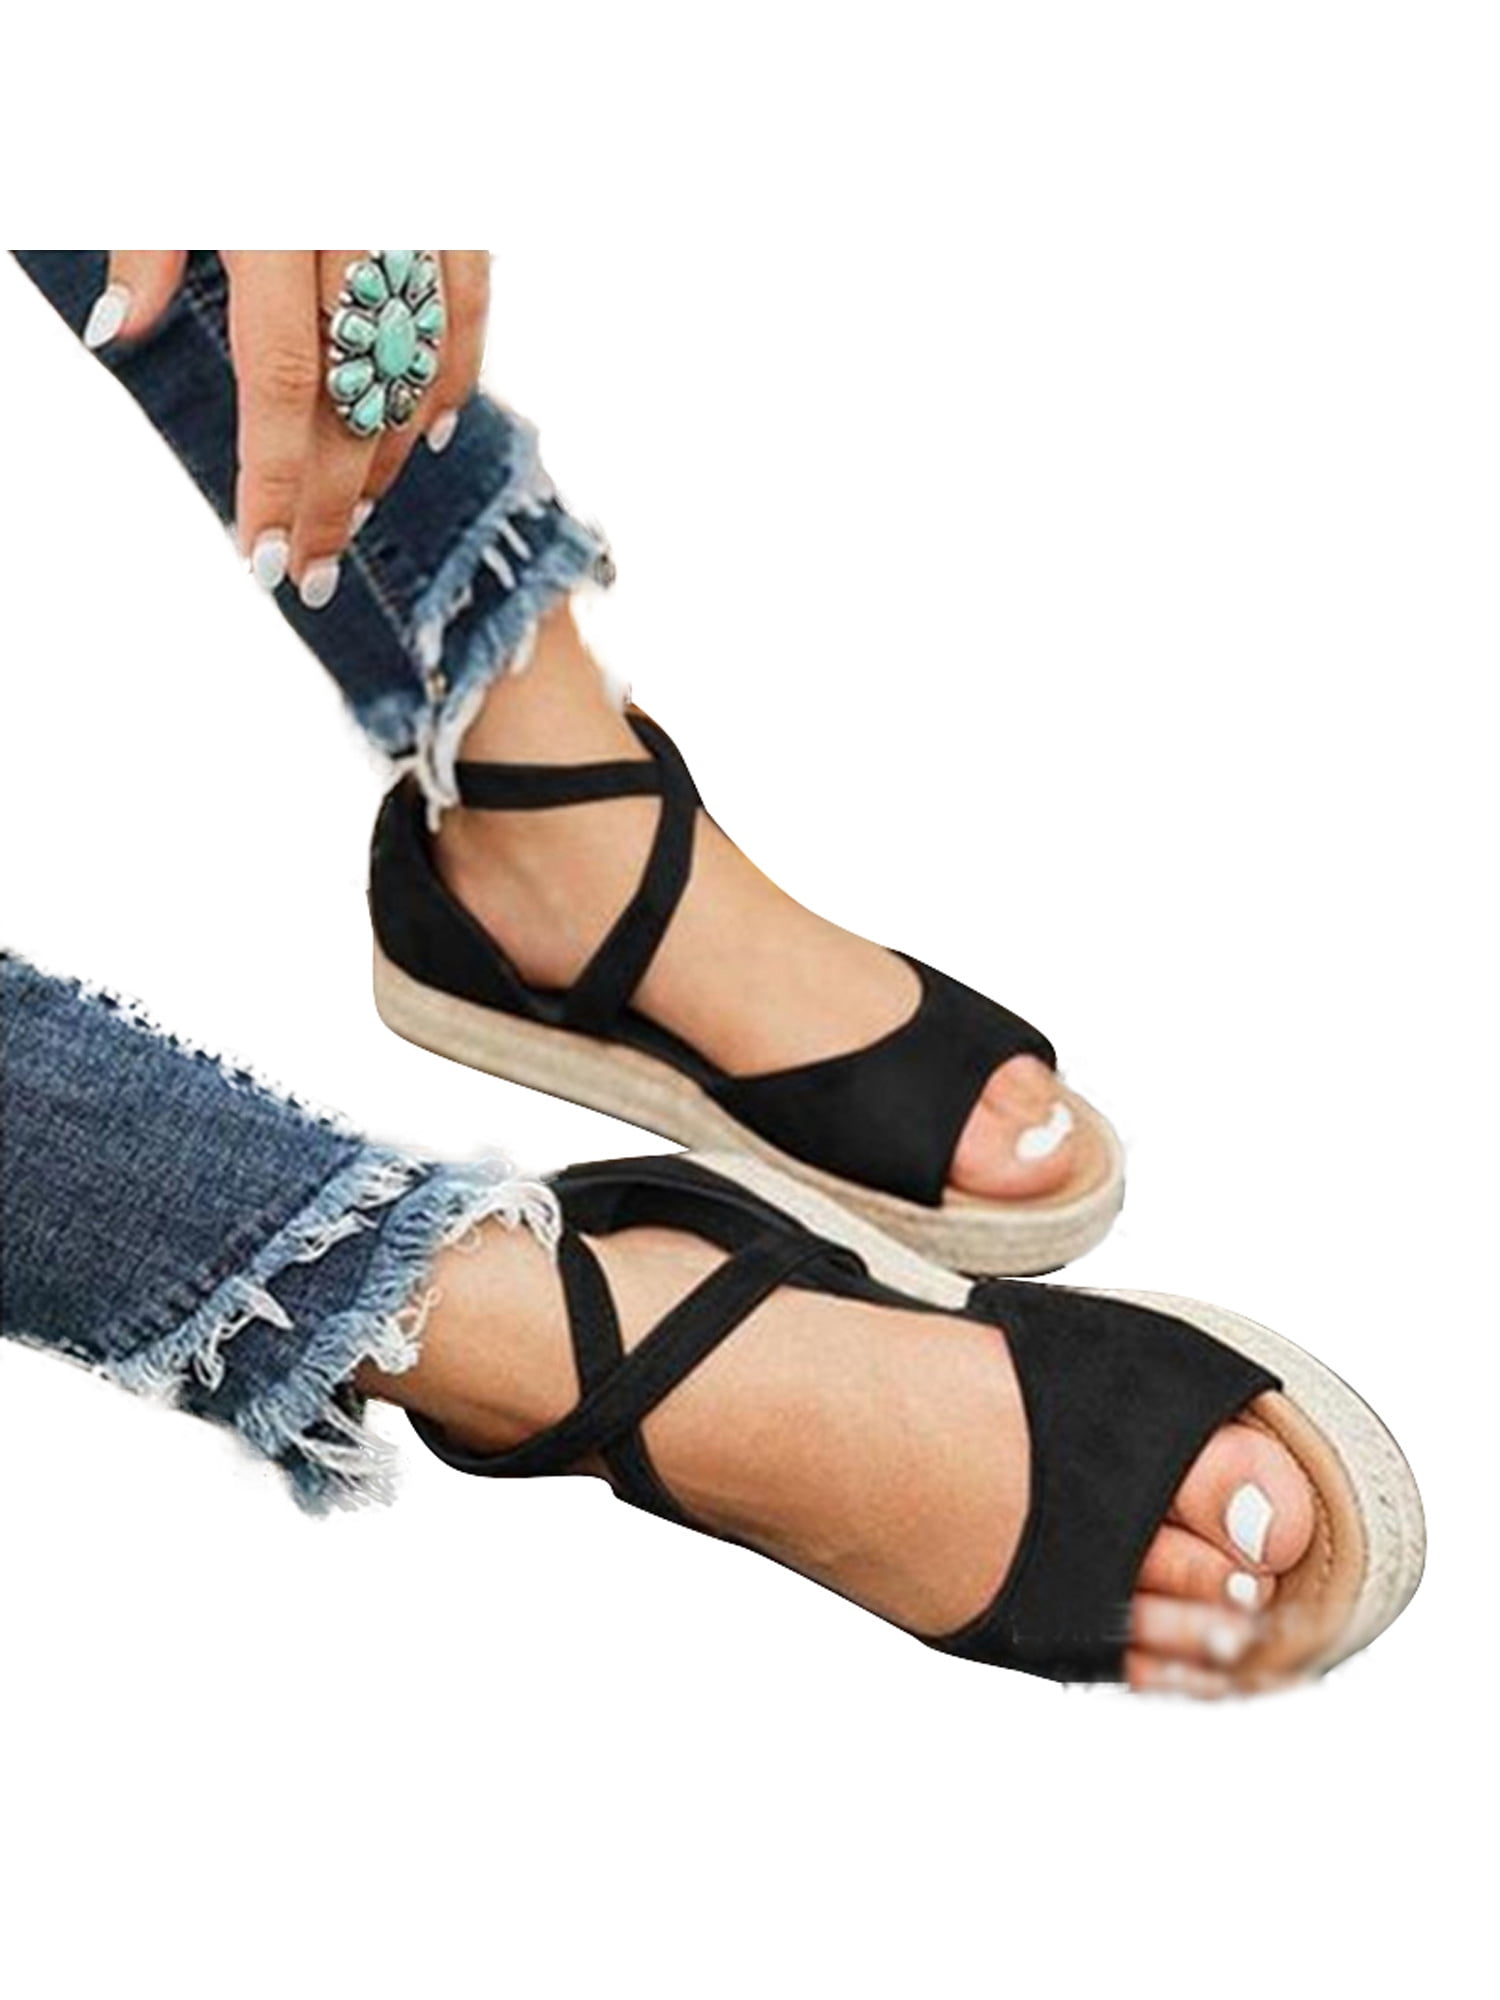 Womens Summer Beach Casual Shoes Flats Sandals Open Toe Espadrilles Flip Flops